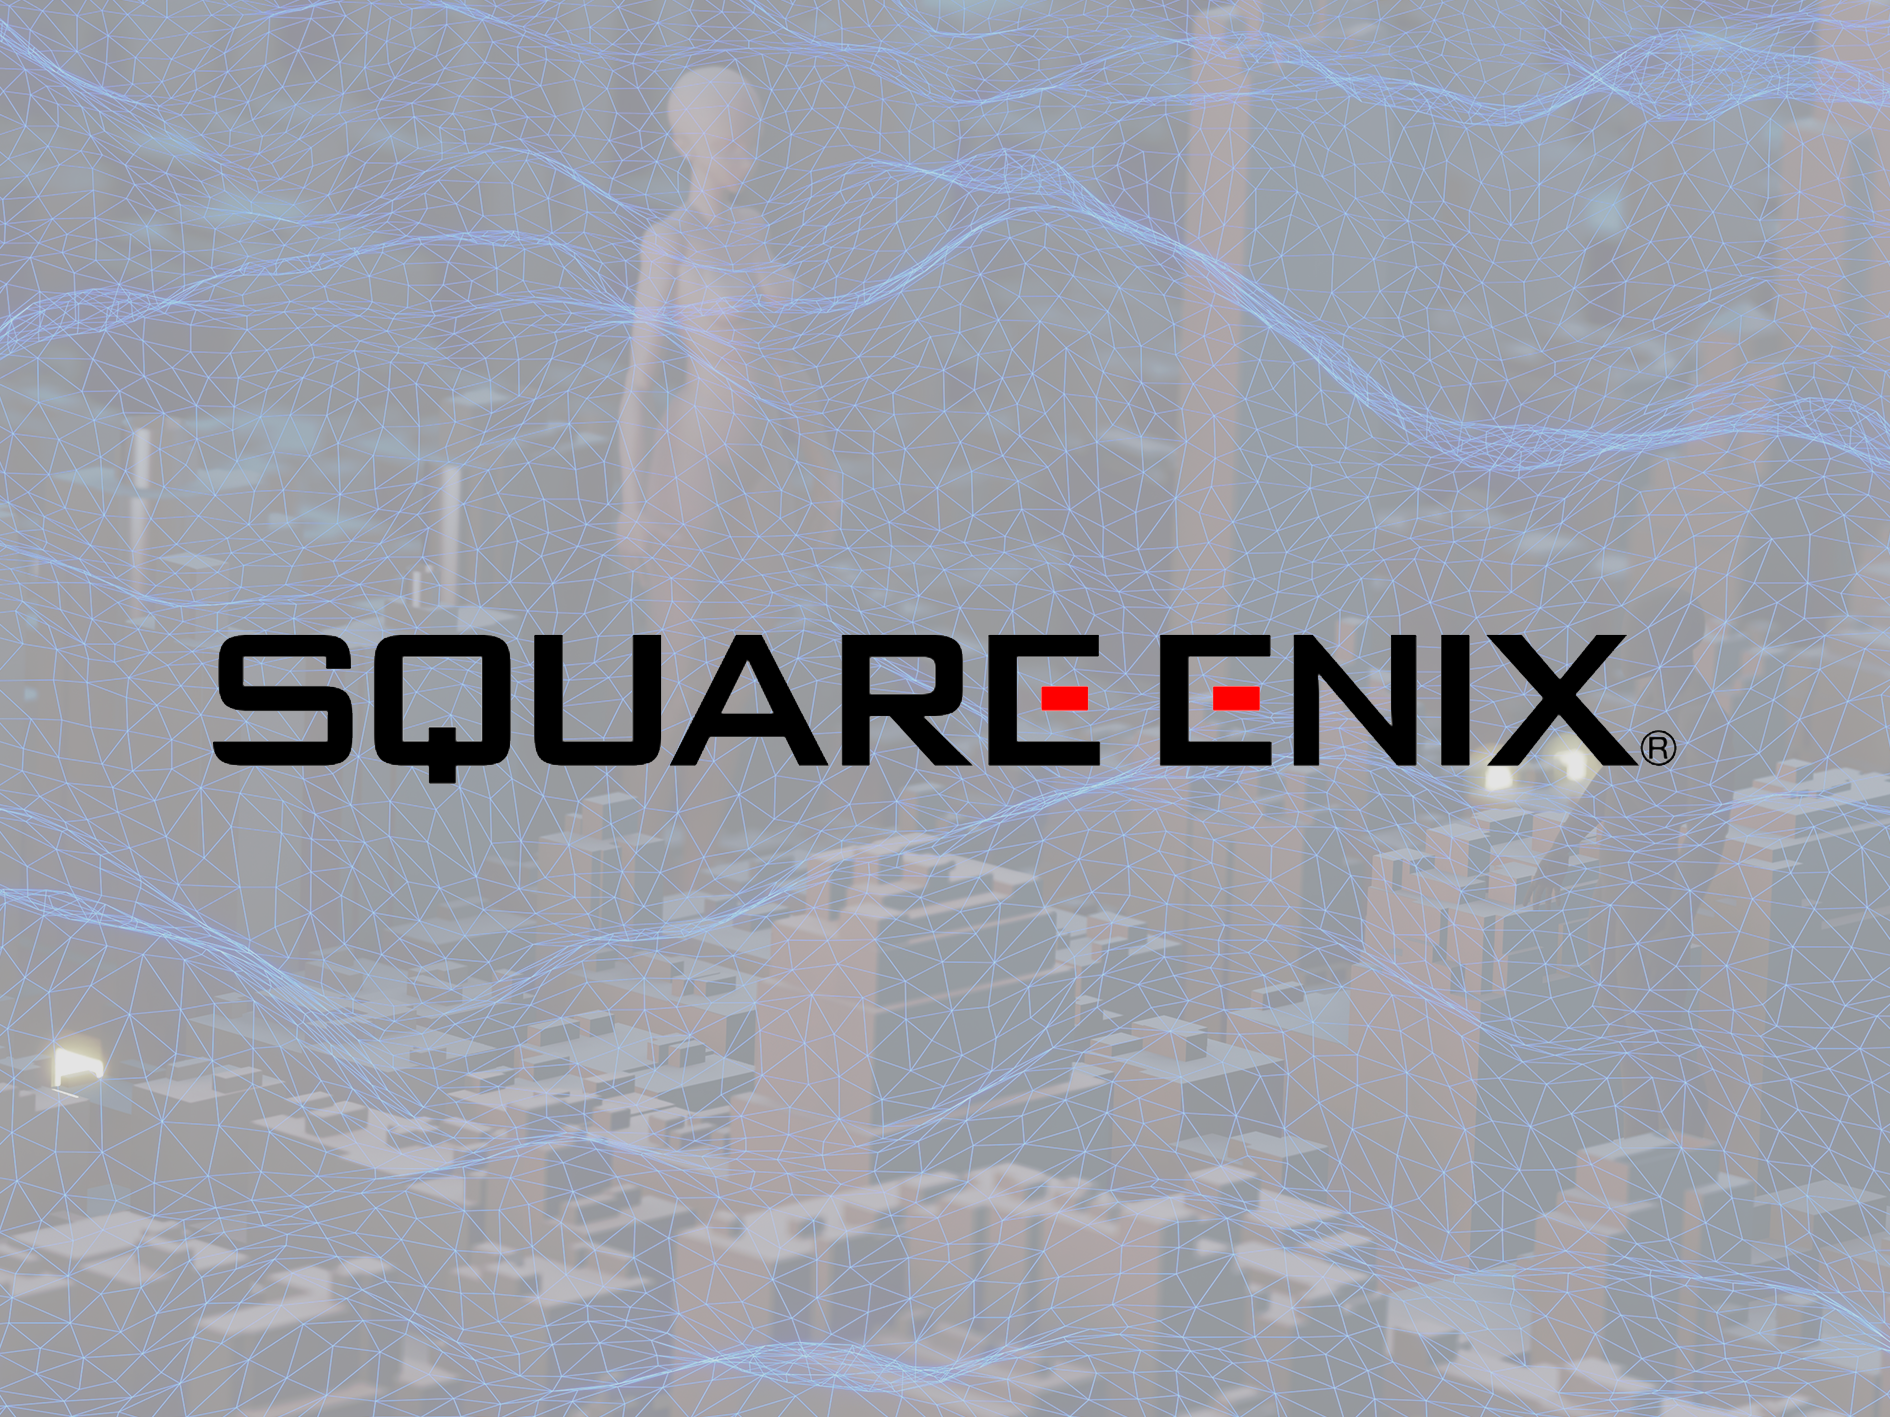 Square Enix Announces Launch Date for Symbiogenesis